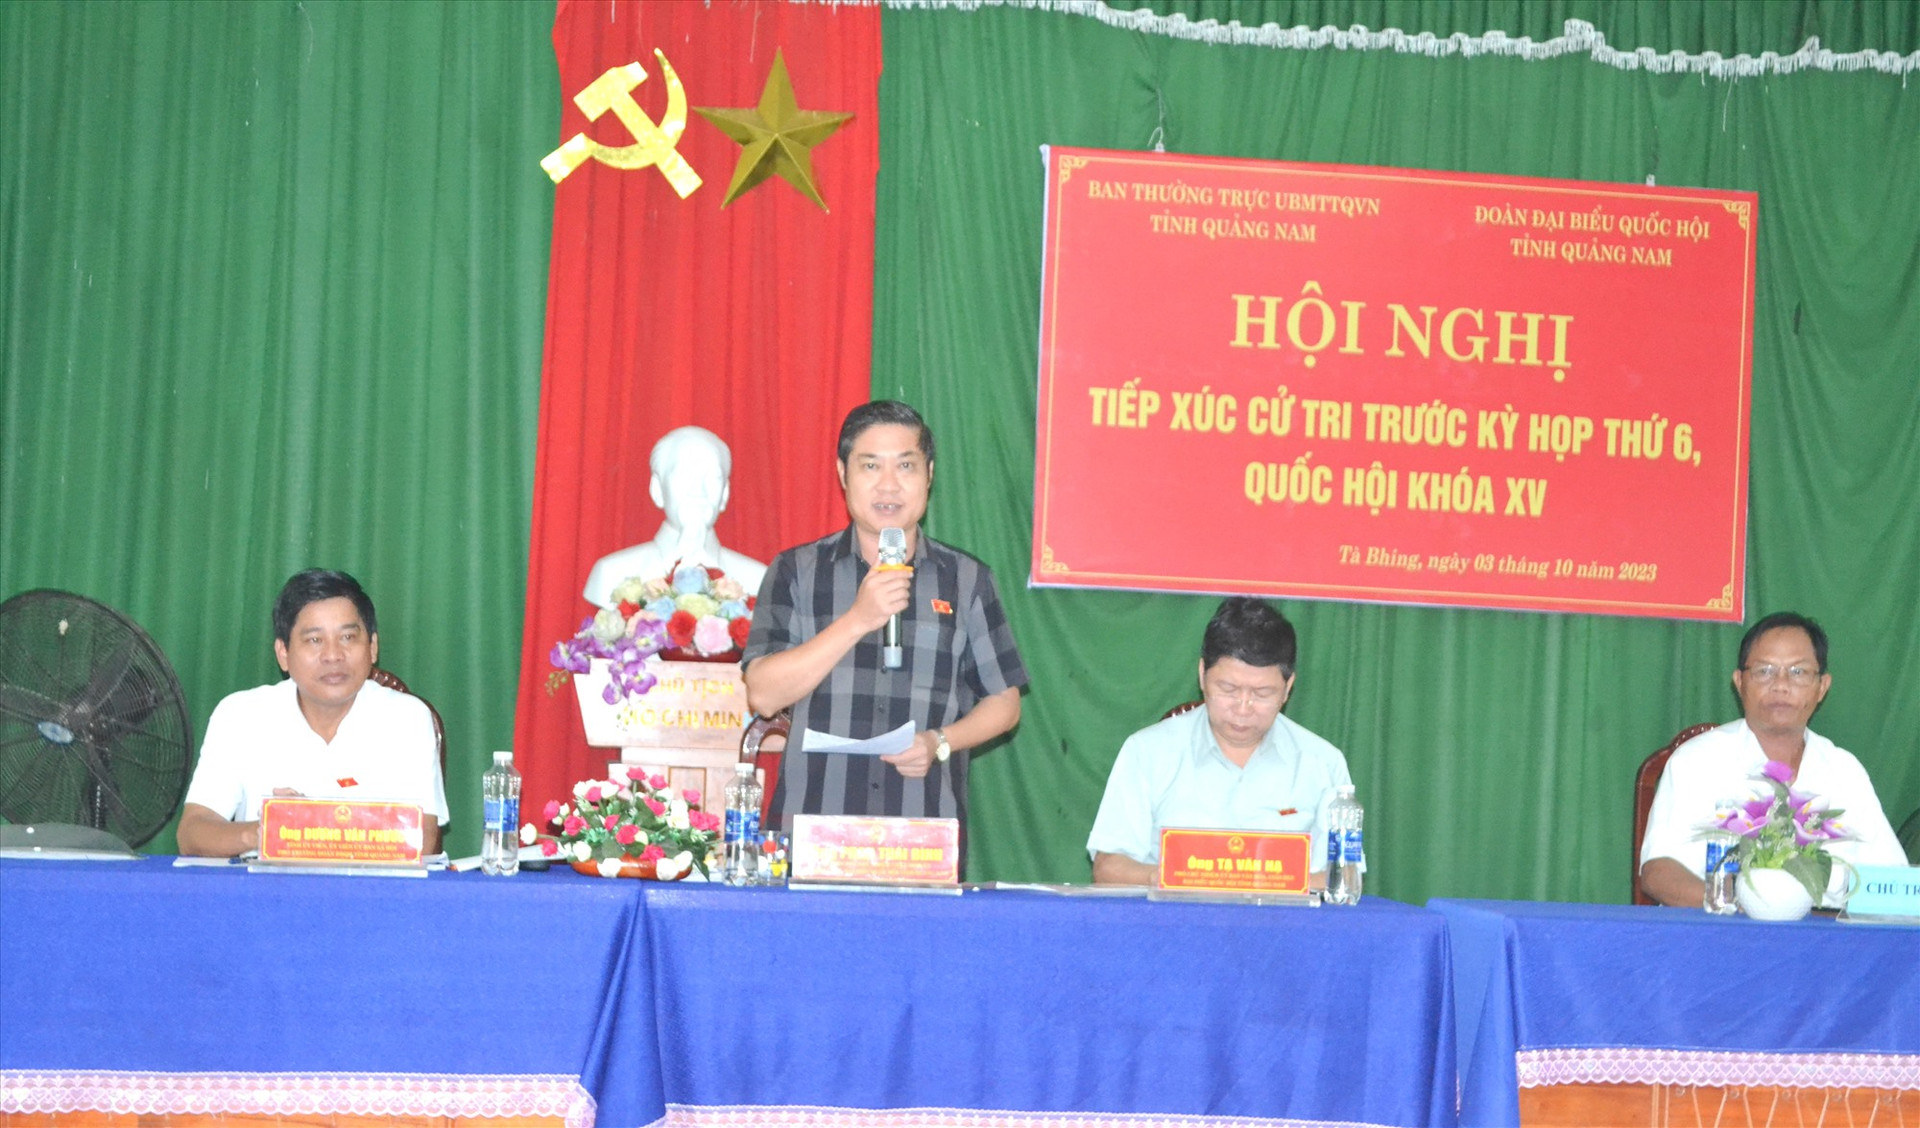 Đại biểu Phan Thái Bình ghi nhận kiến nghị của cử tri và cho biết sẽ tổng hợp, kiến nghị đến Quốc hội. Ảnh: C.T